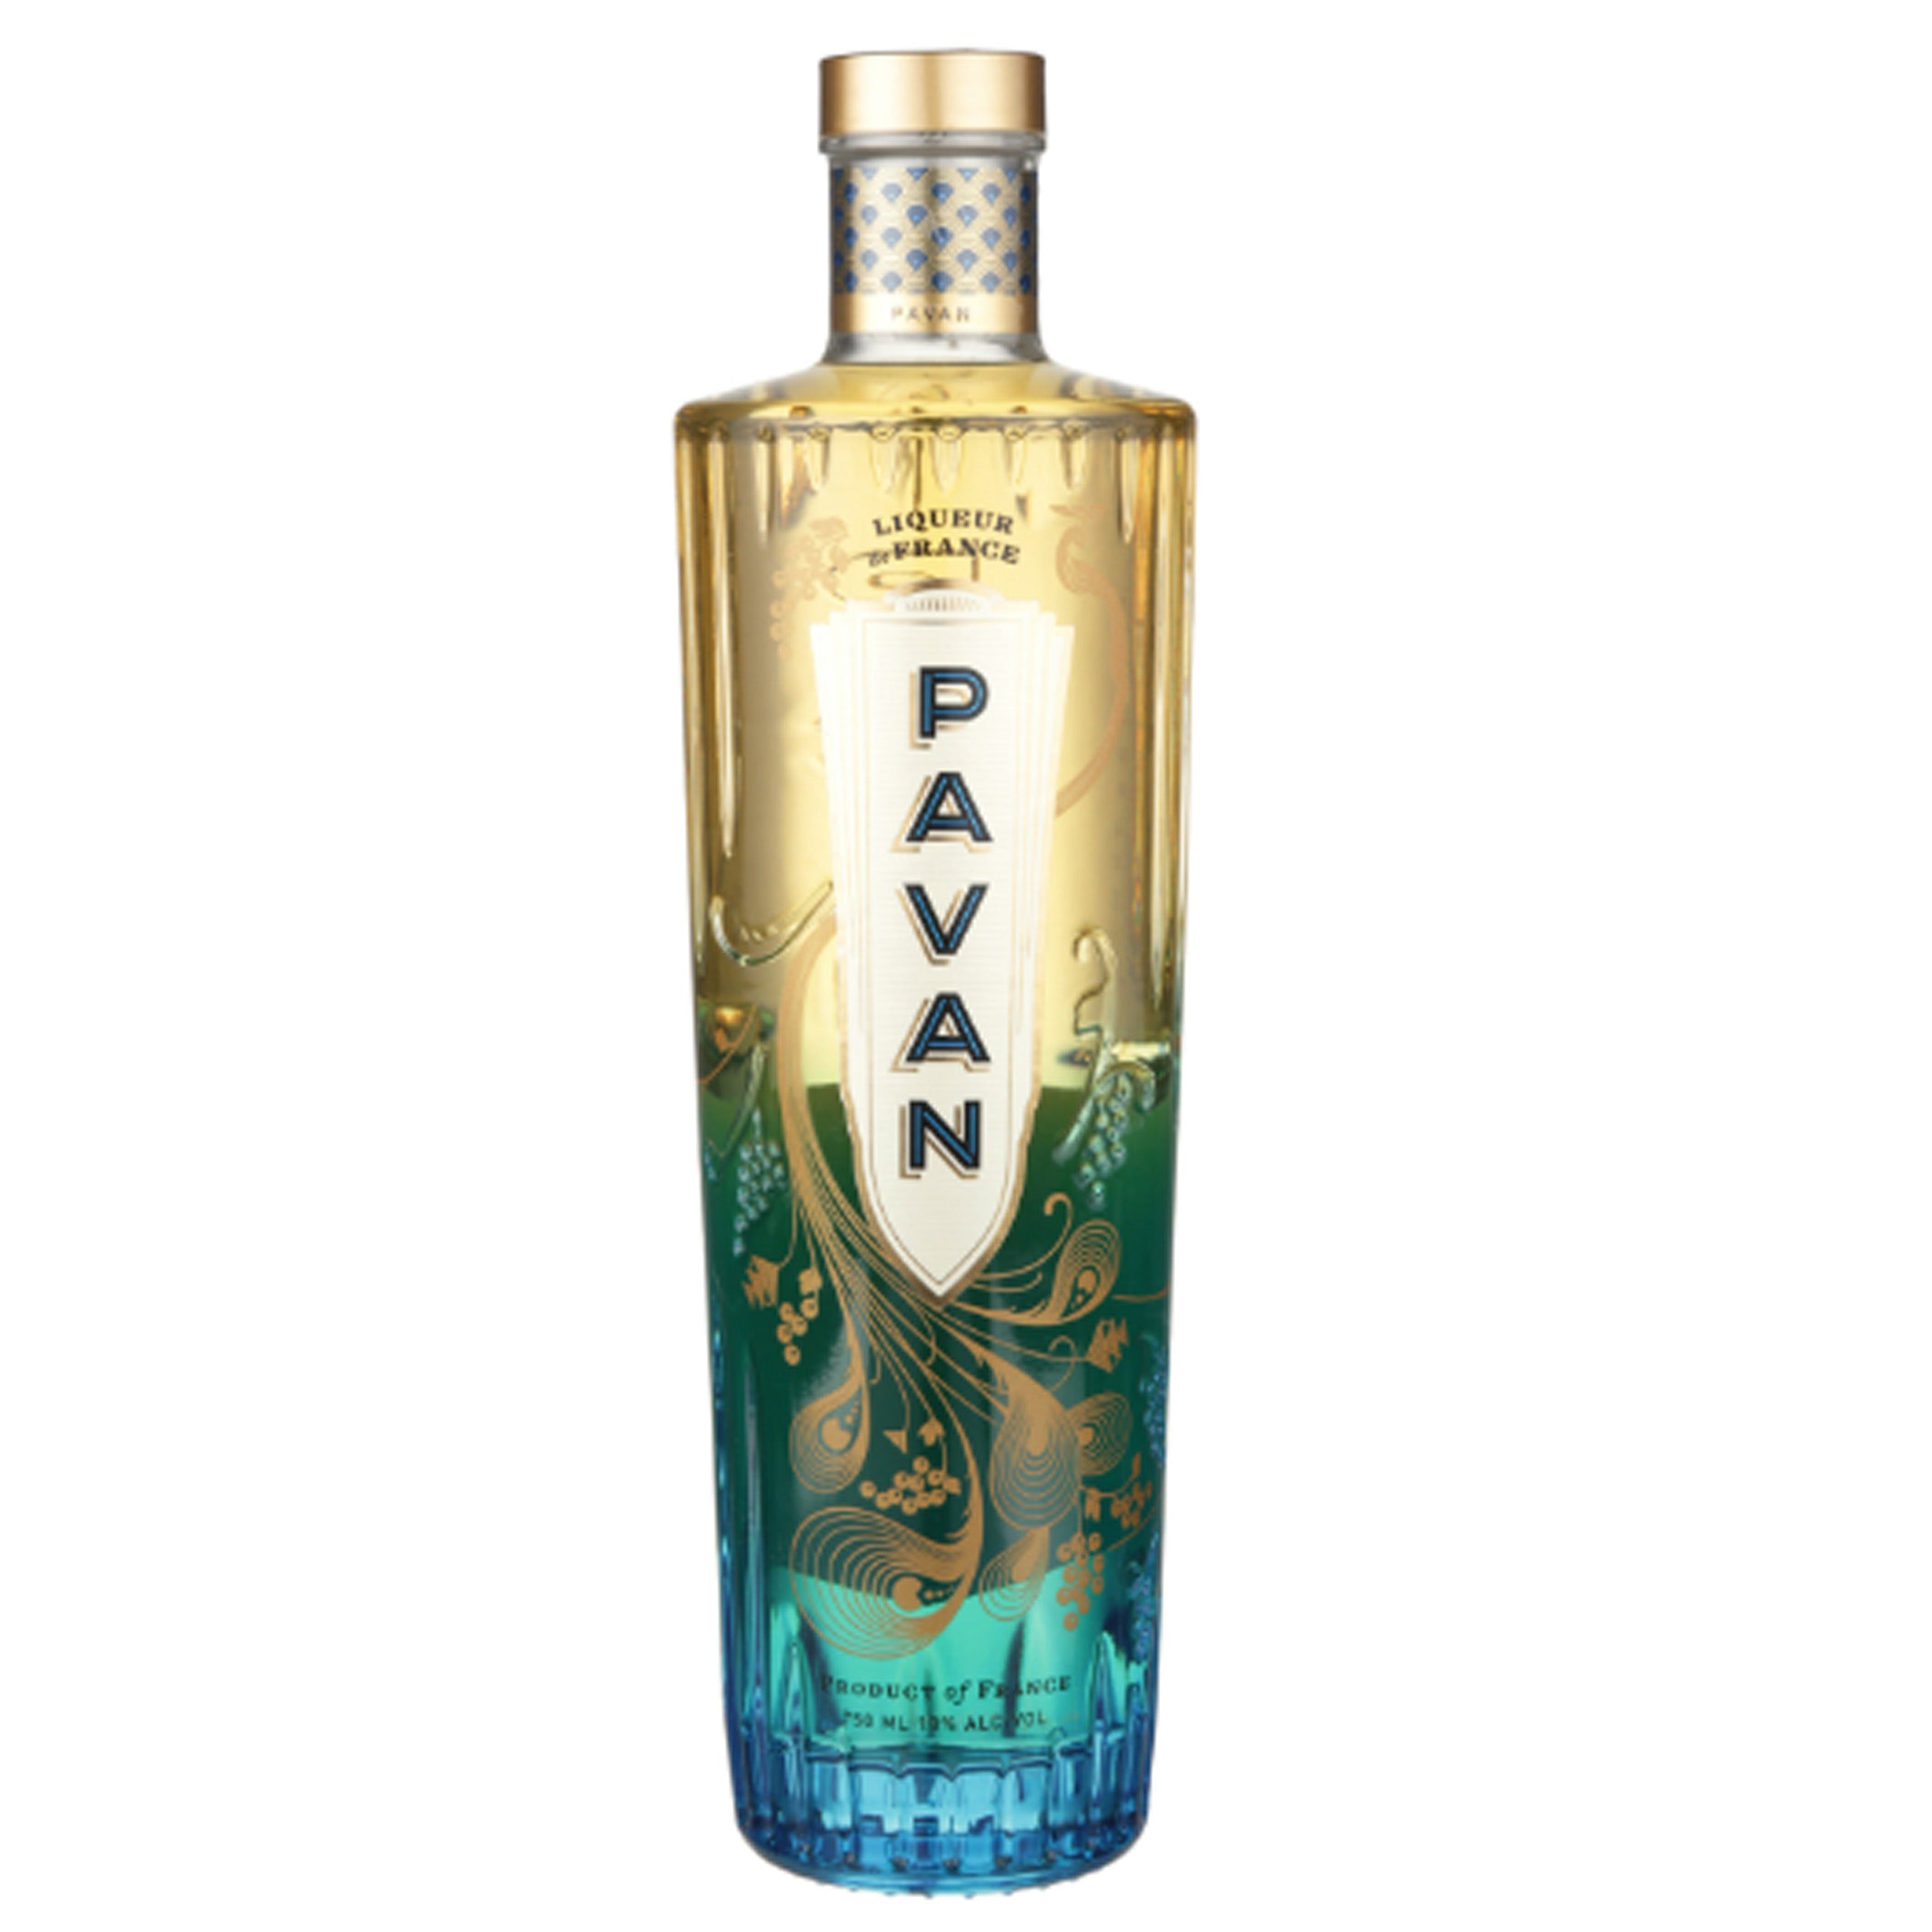 Pavan Liqueur De France – Chips Liquor